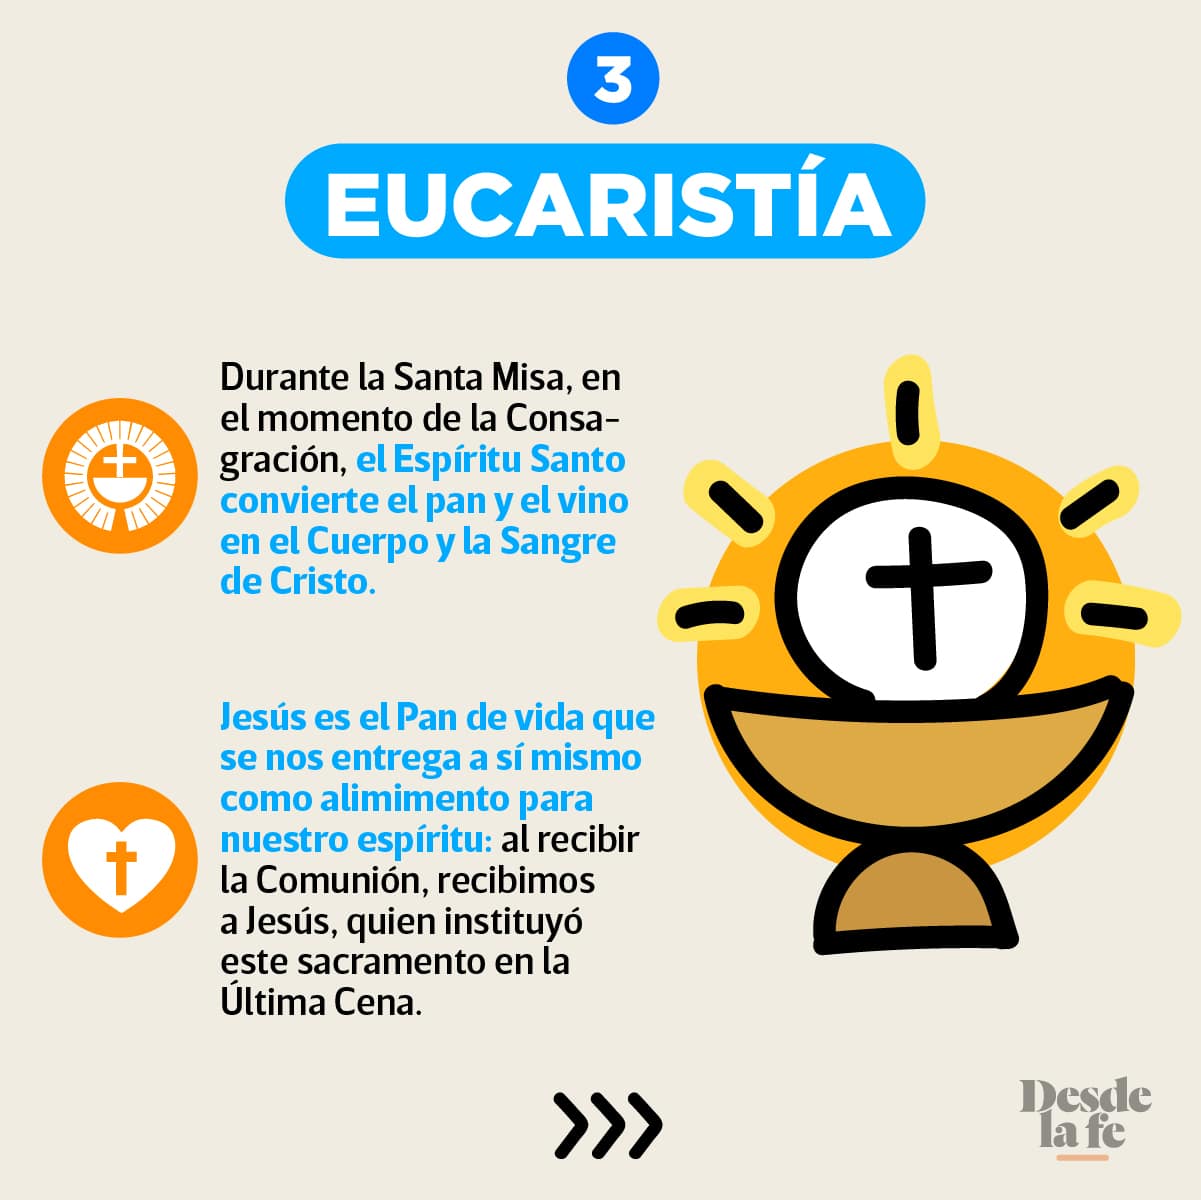 La Eucaristía es uno de los 7 Sacramentos de la Iglesia.